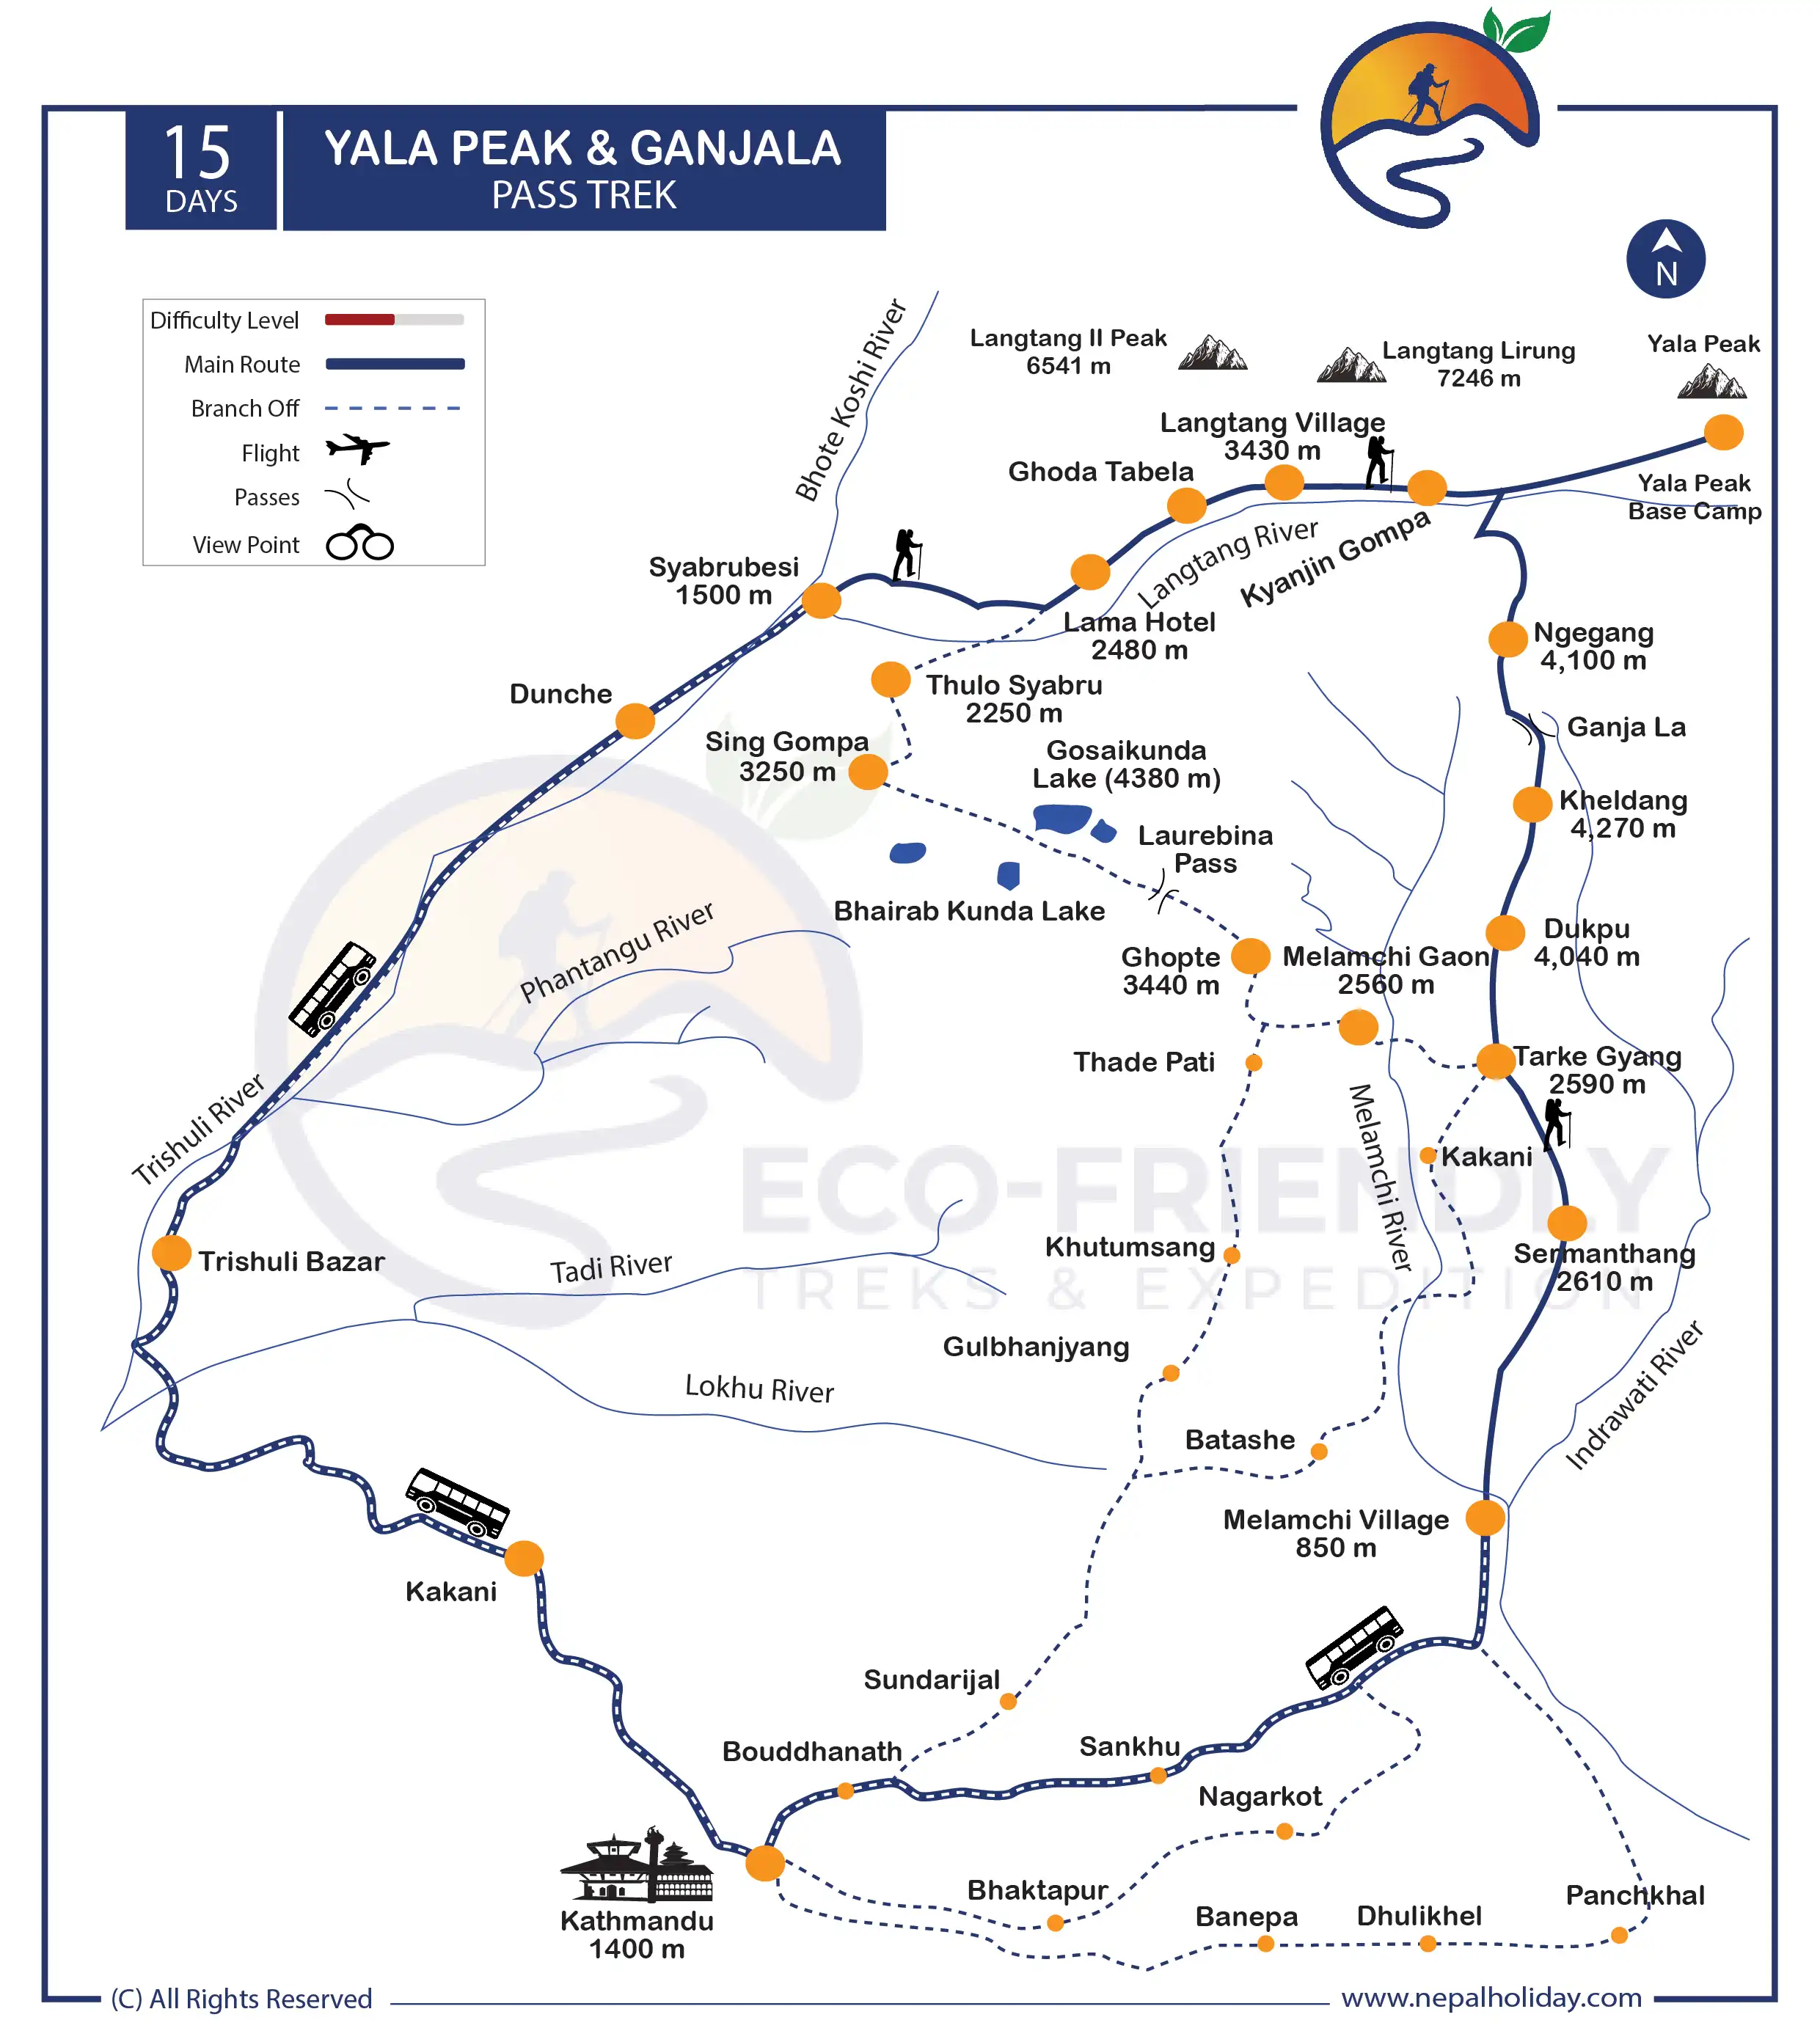 Yala Peak and Ganjala Pass Trek Map